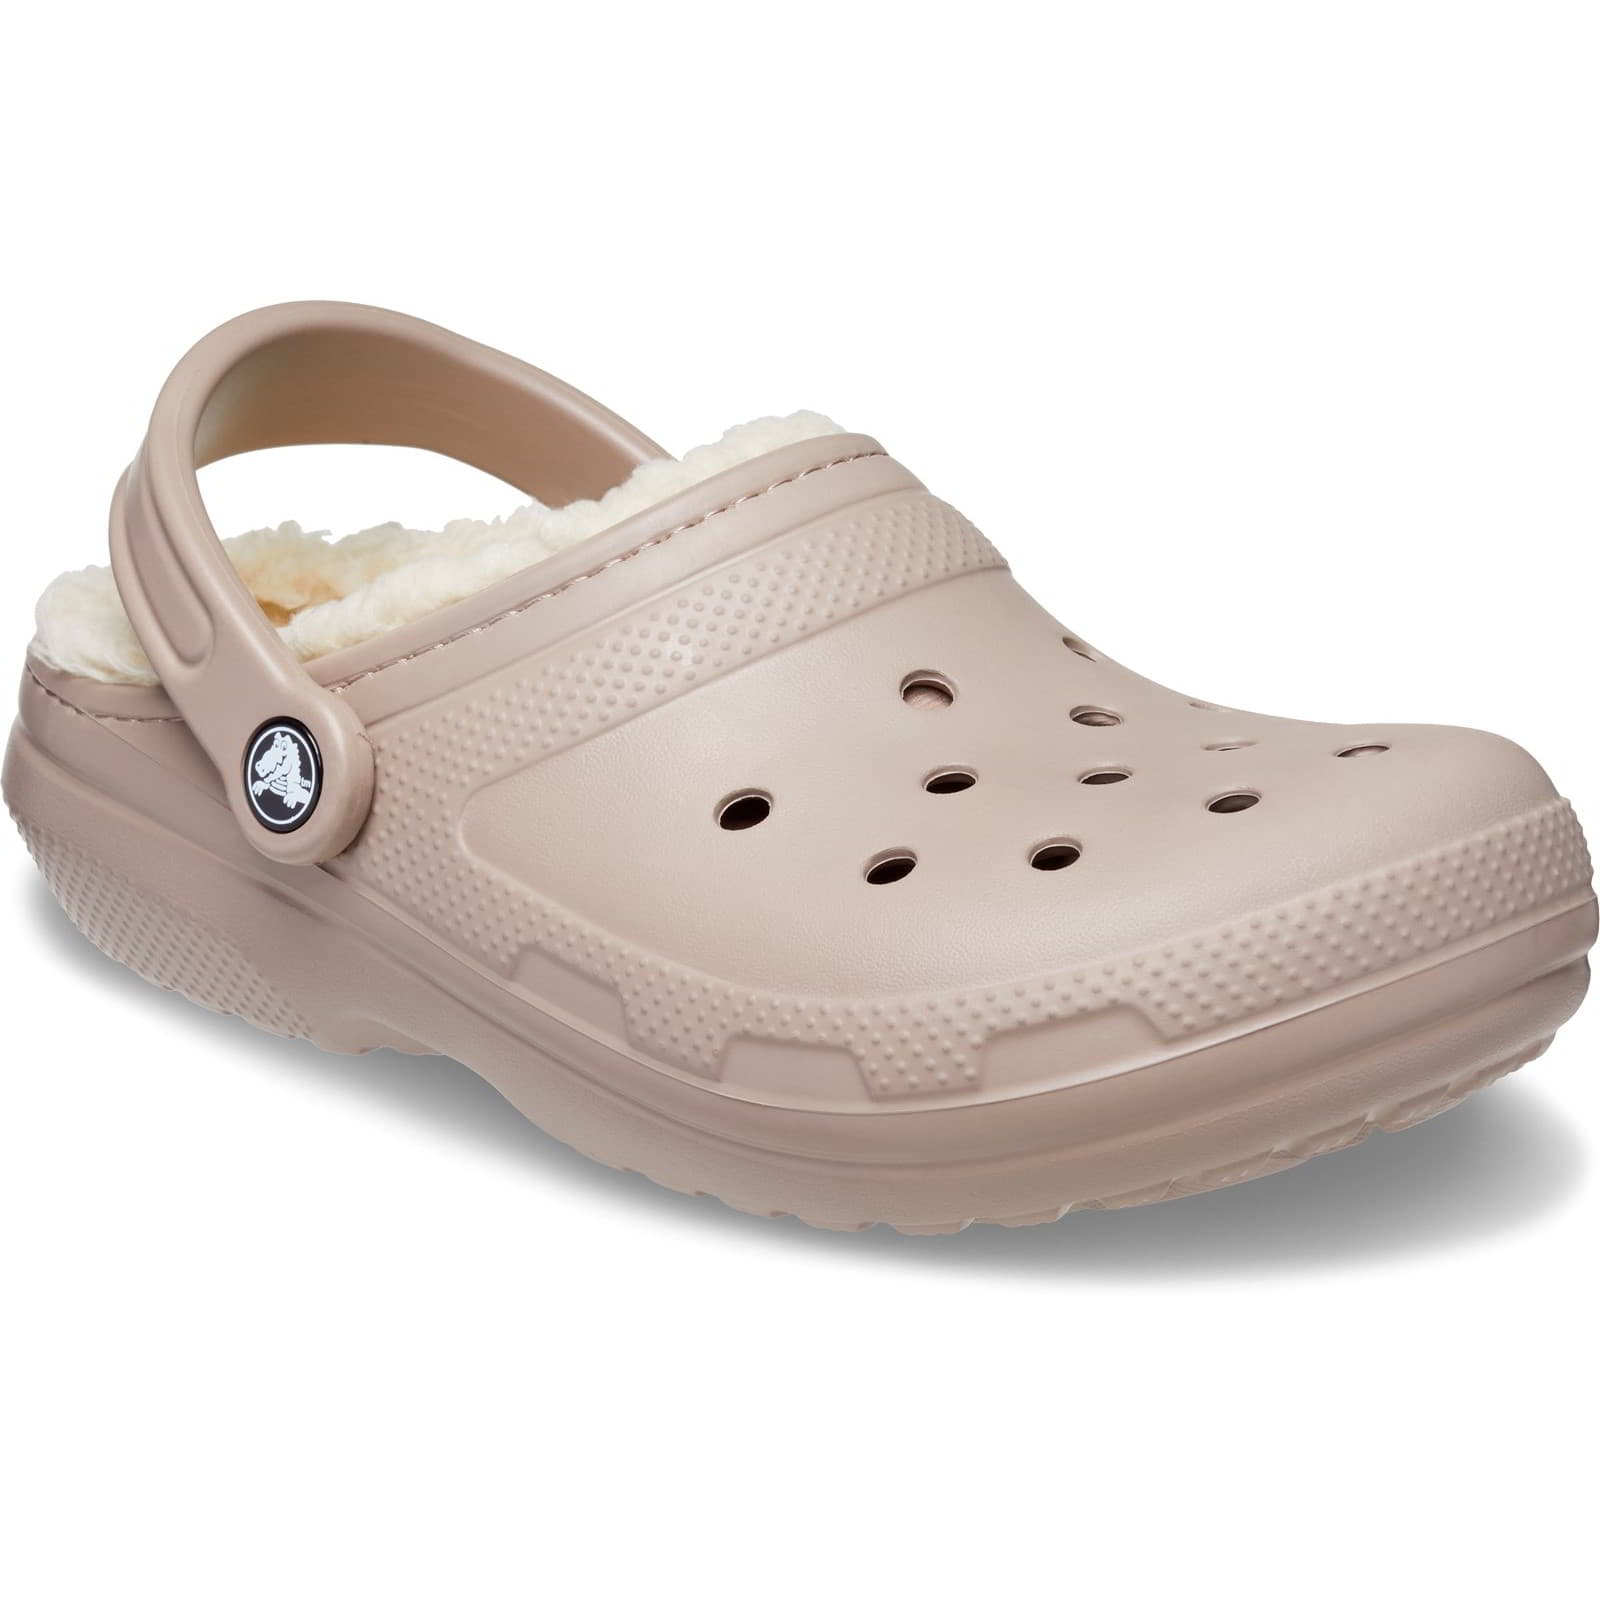 Crocs Men's Women's Classic Lined Clog Warm Slip On Slippers Shoes - UK M12-W13 / EU 48-49 / US M13-W15